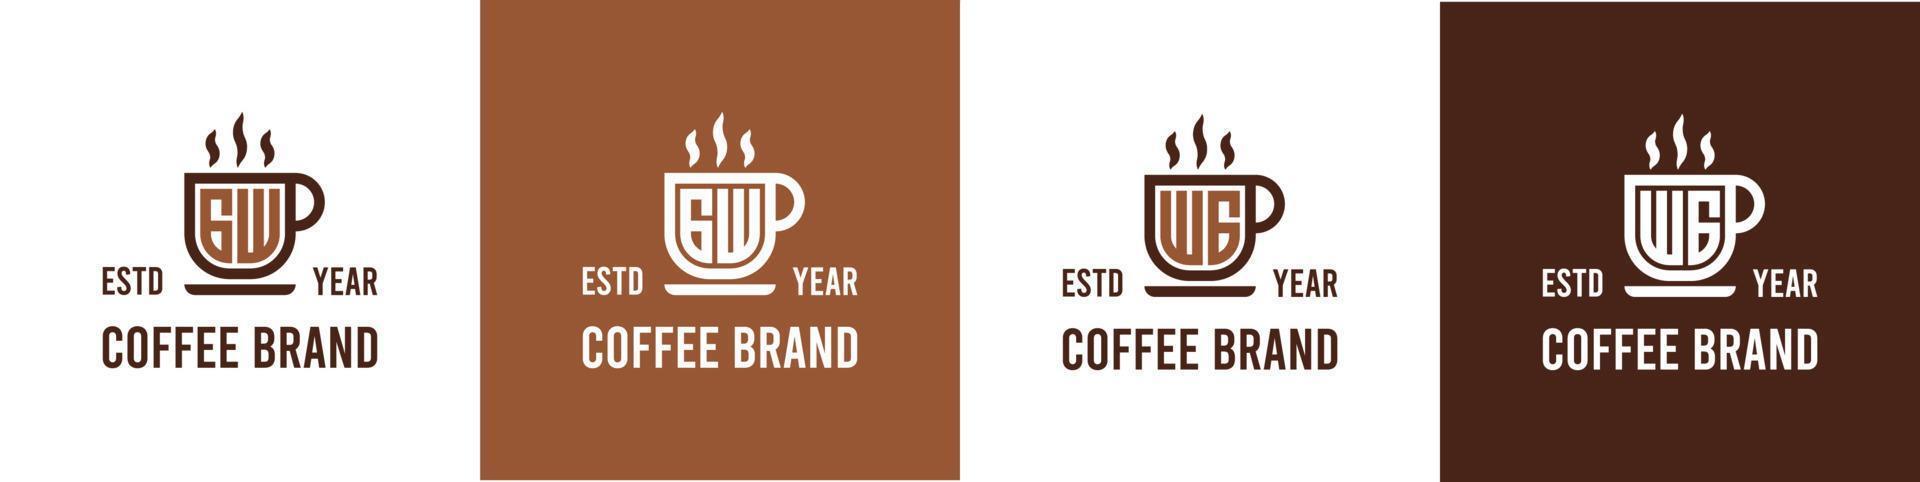 carta gw e wg café logotipo, adequado para qualquer o negócio relacionado para café, chá, ou de outros com gw ou wg iniciais. vetor